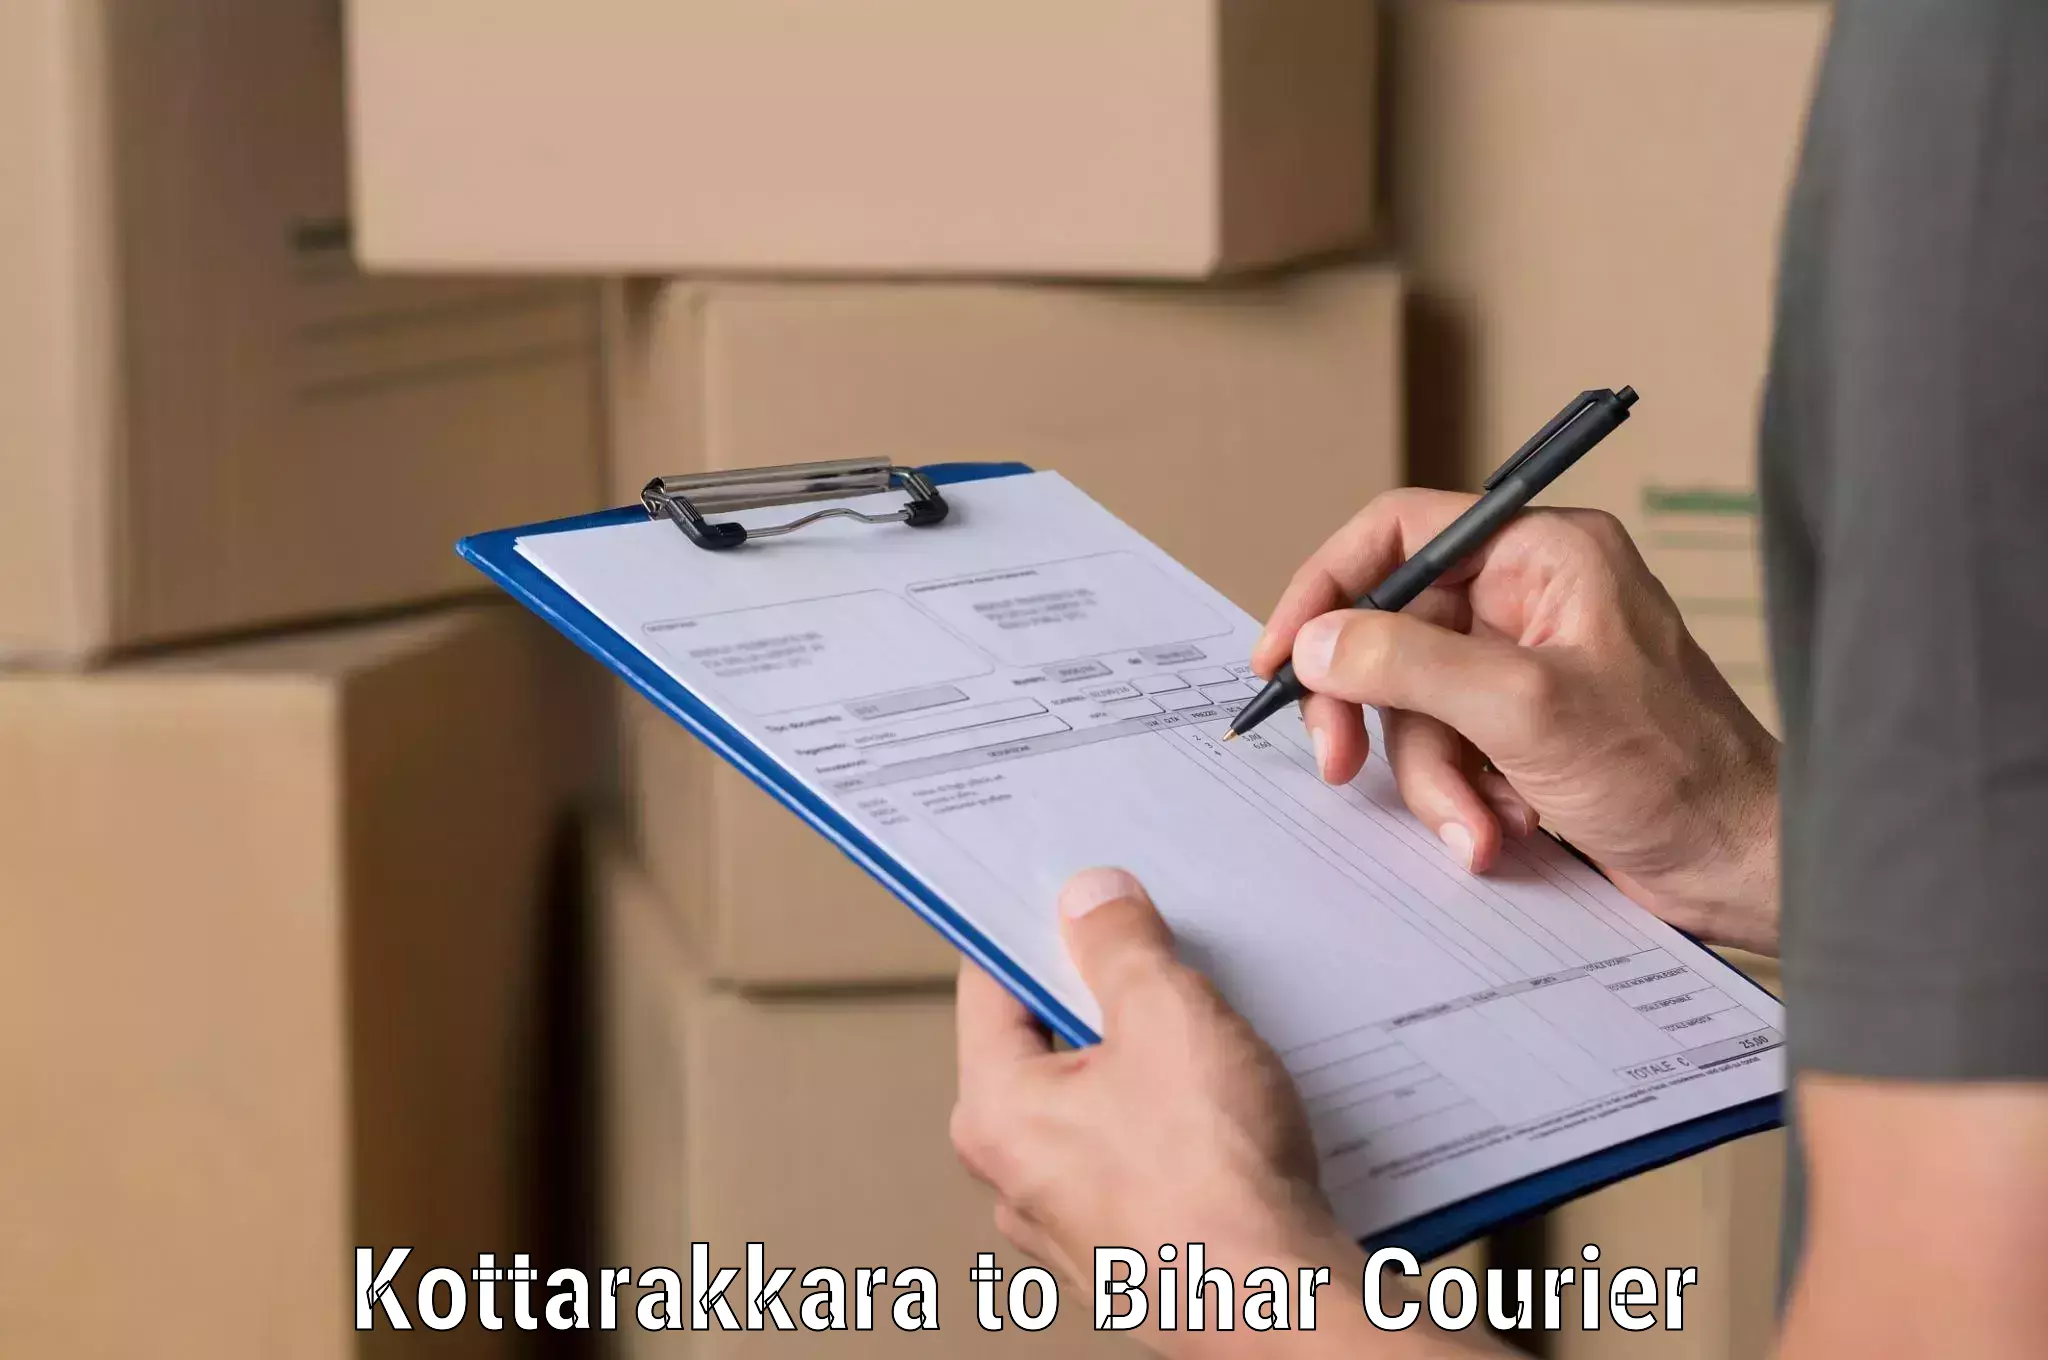 Express courier facilities Kottarakkara to Bihar